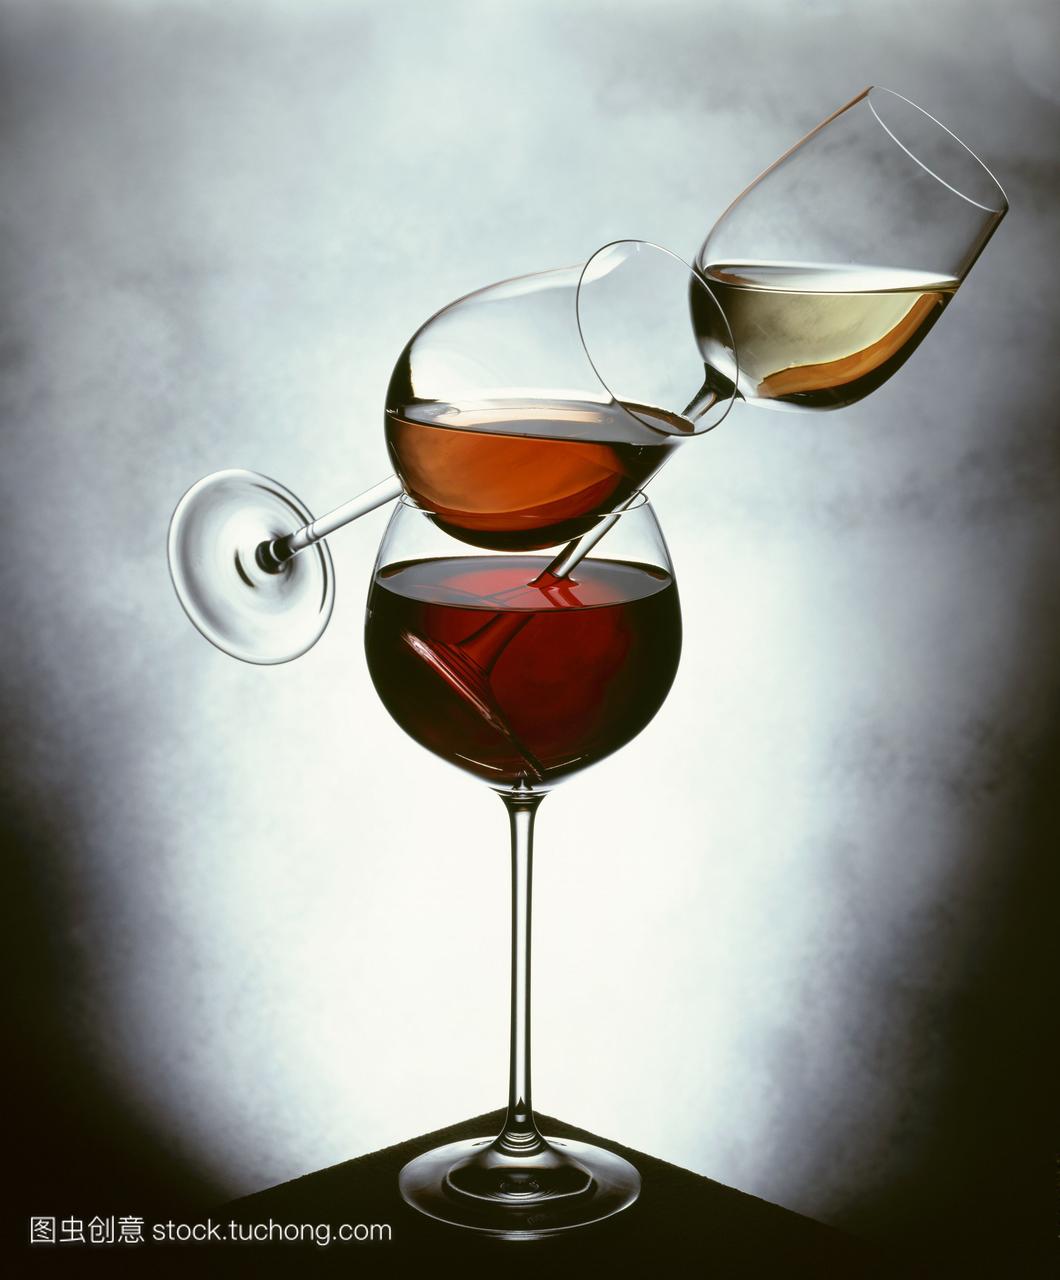 静物与白葡萄酒ros?葡萄酒和红酒的眼镜